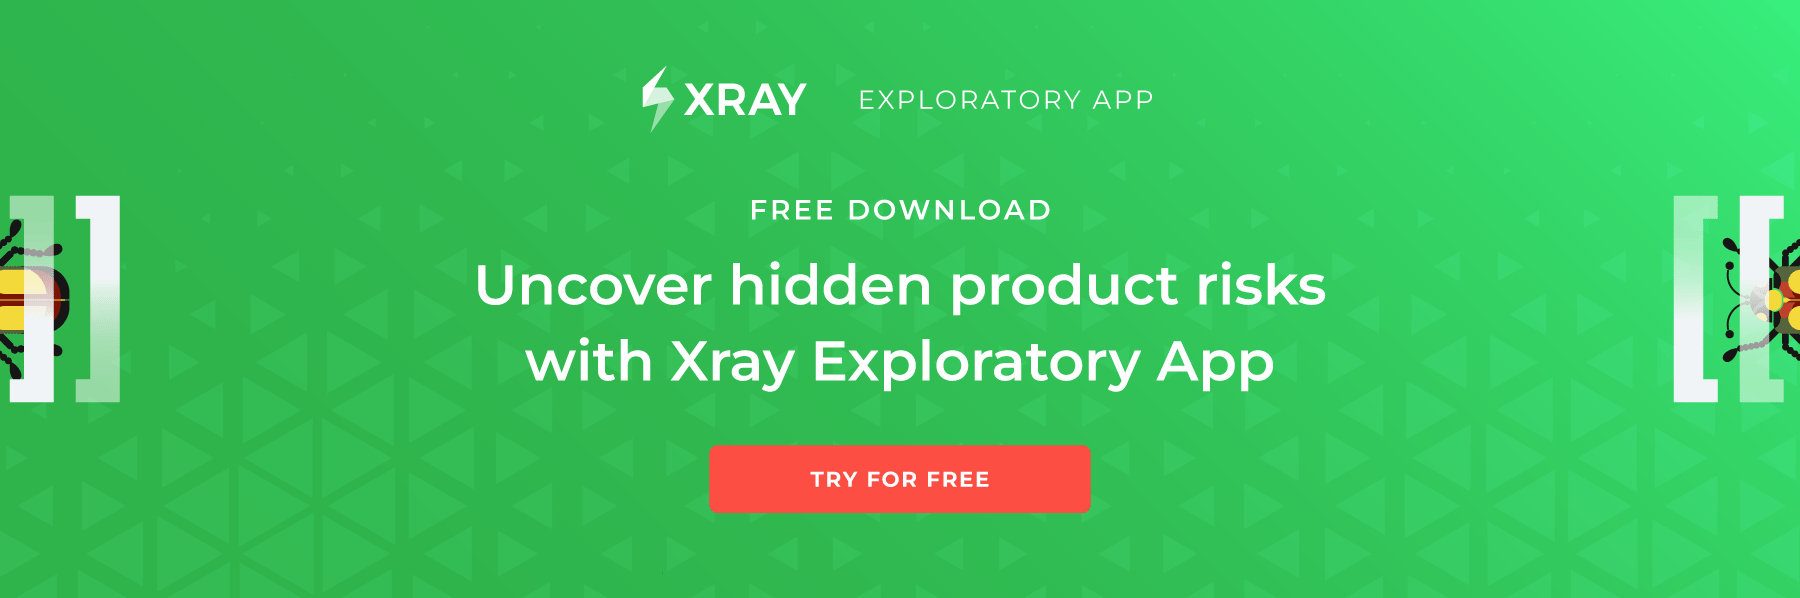 Xray-Exploratory-App